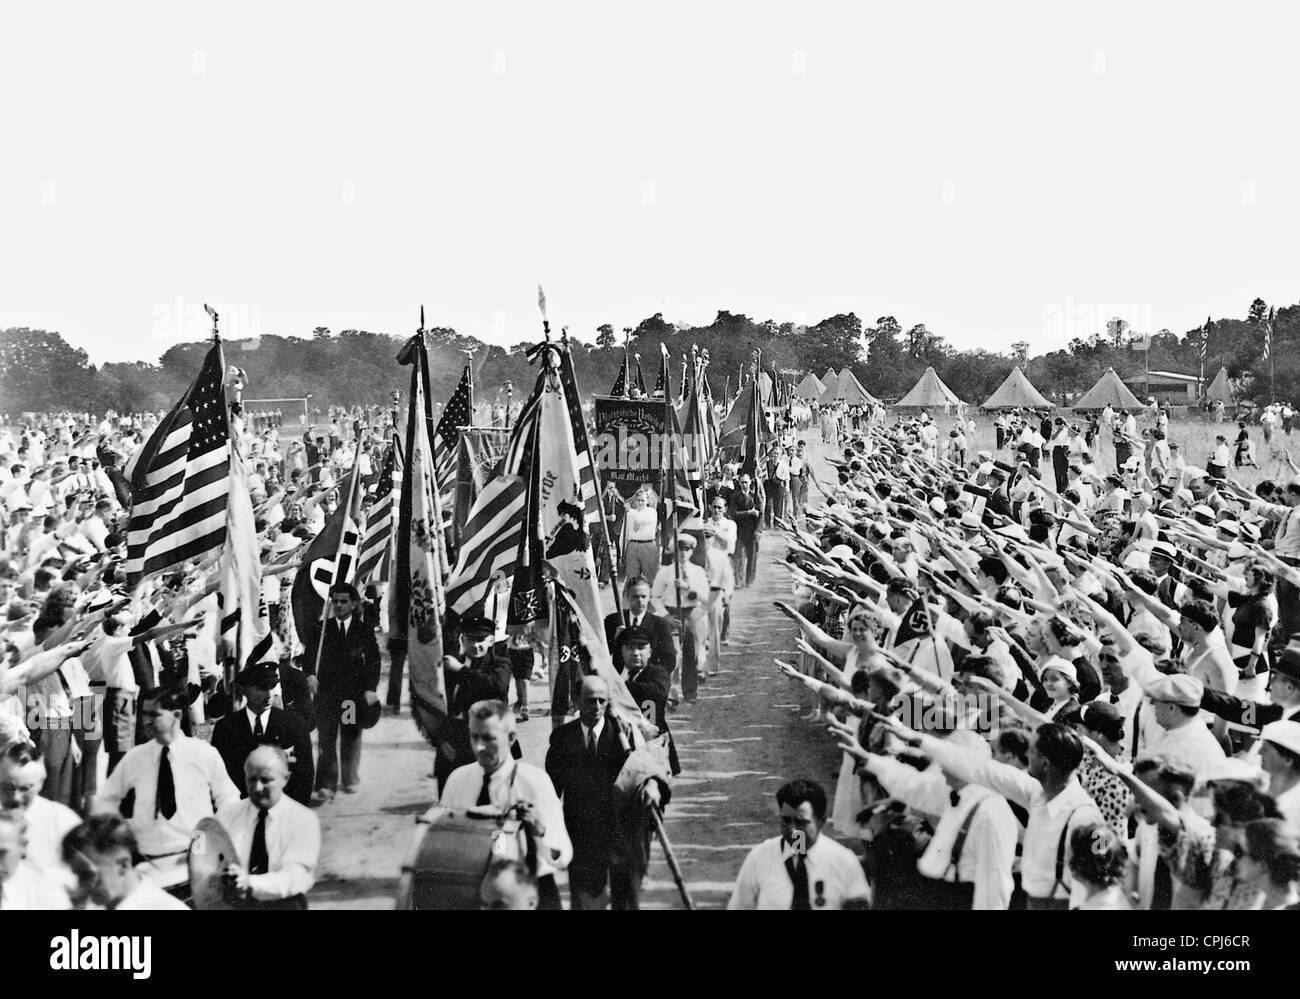 Desfile anual del Bund germano-americana en Long Island, 1936 Foto de stock